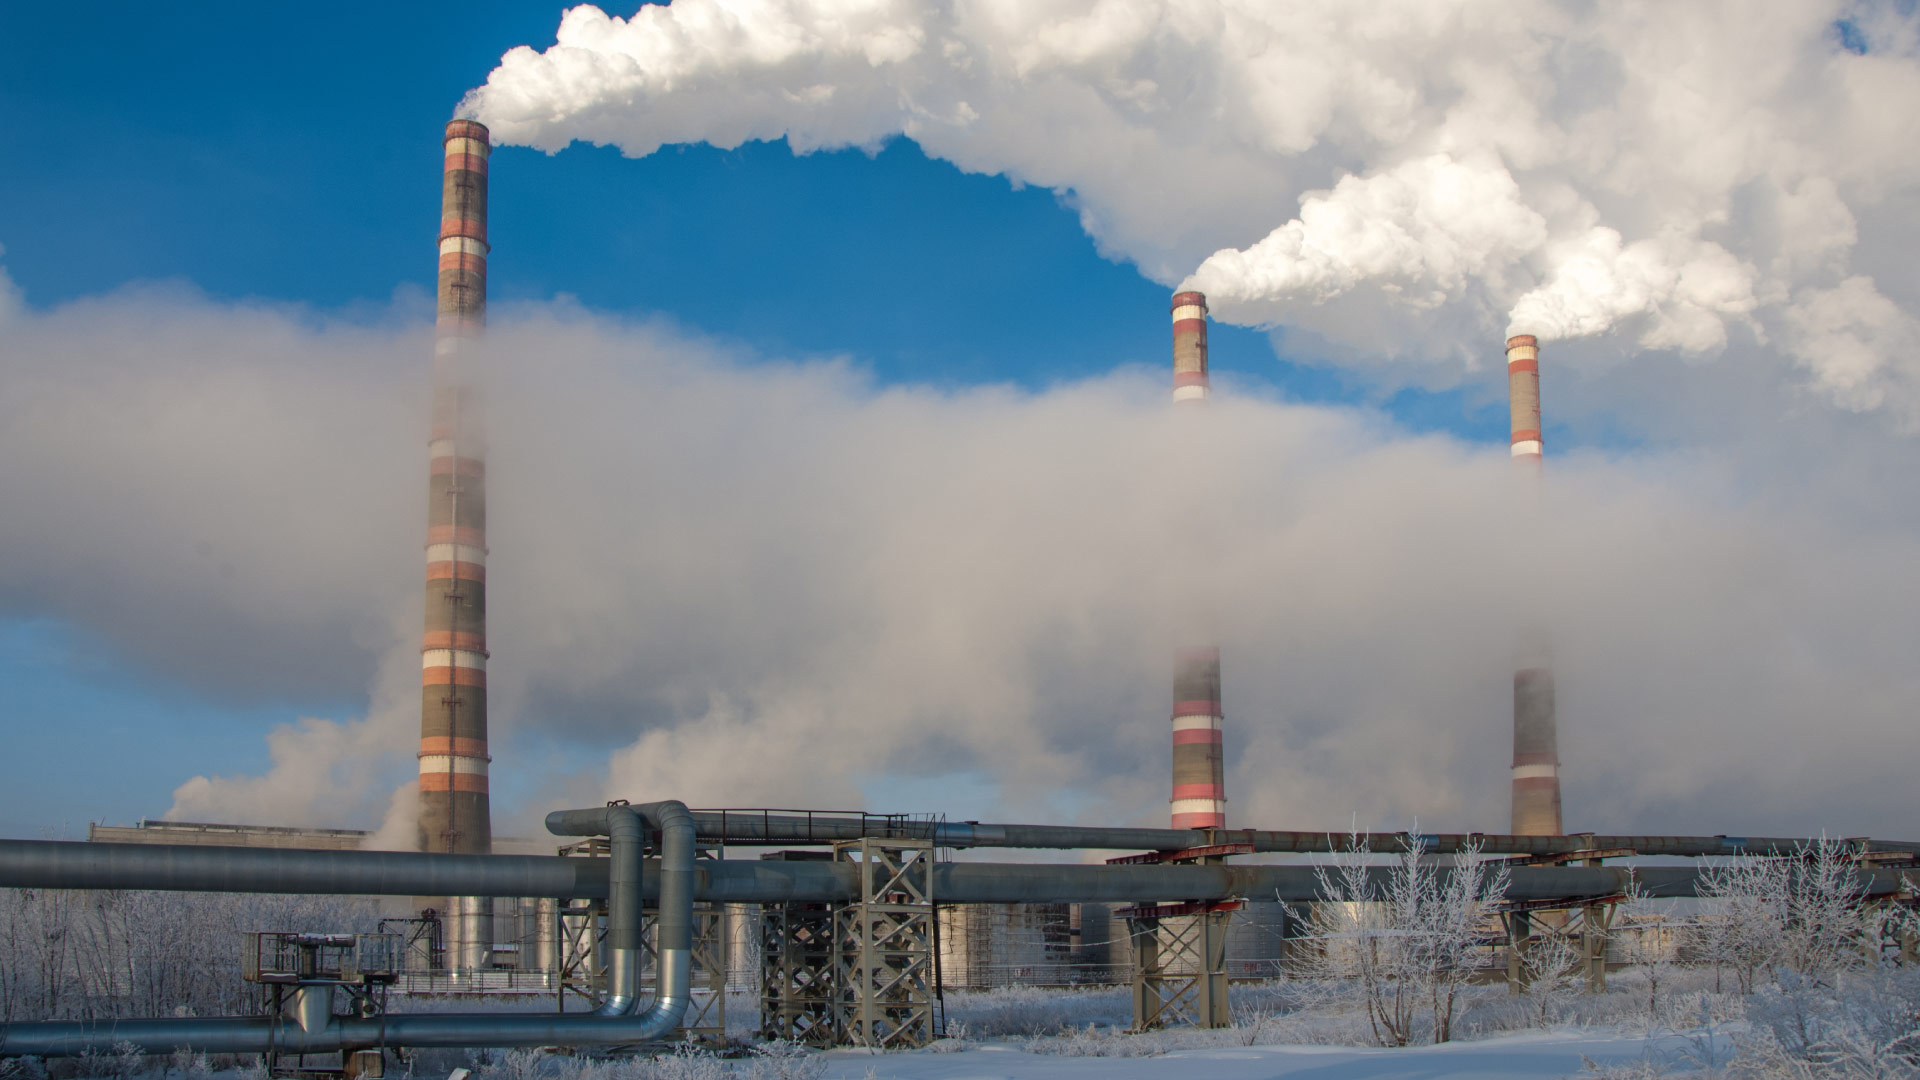 cogeneracion-fabricas-gases-industrias-urbano-contaminacion-aire-energias-sostenibilidad-urbana